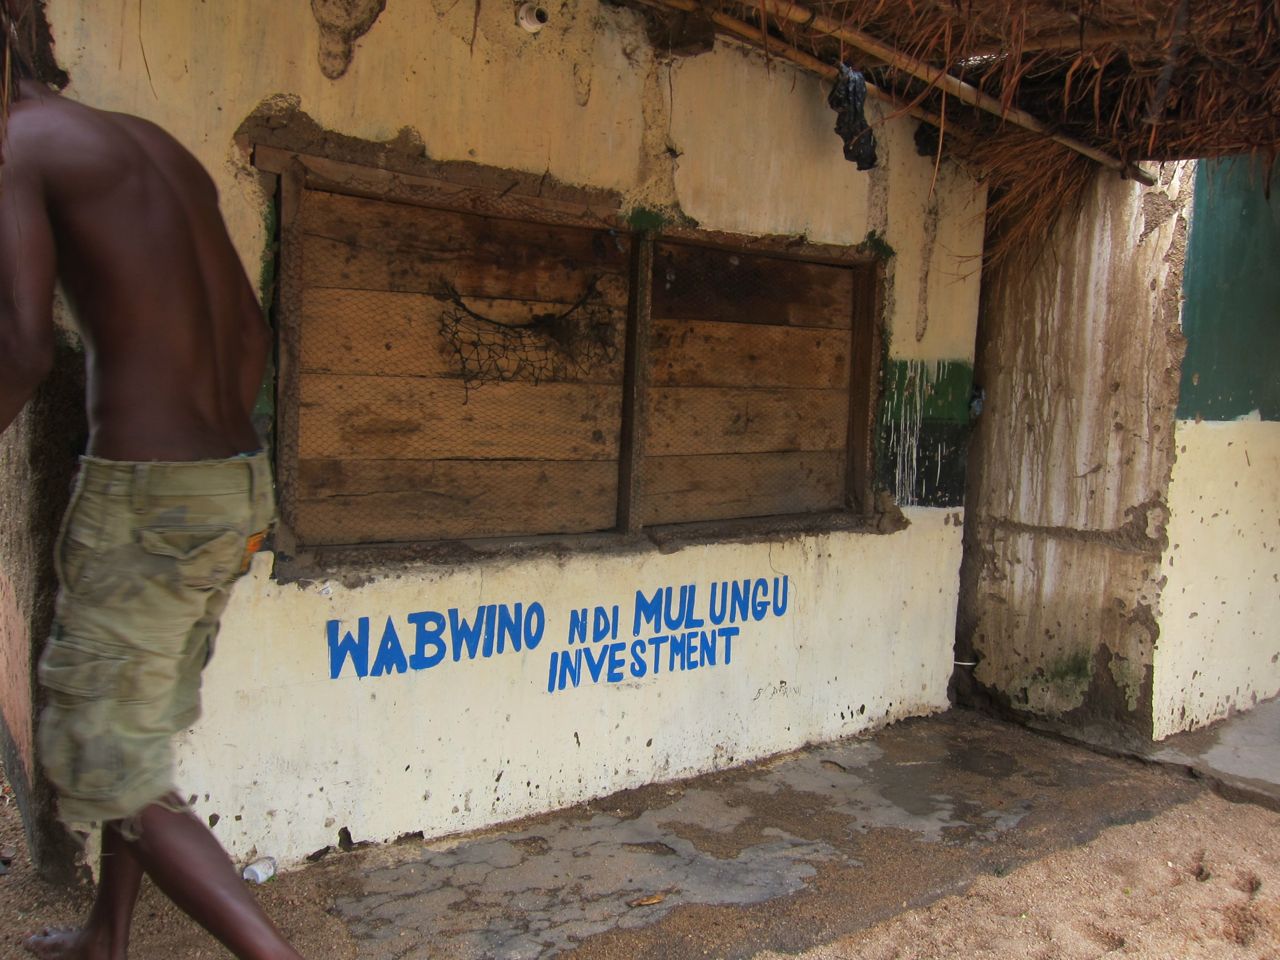 Wabwino ndi Mulungu investment